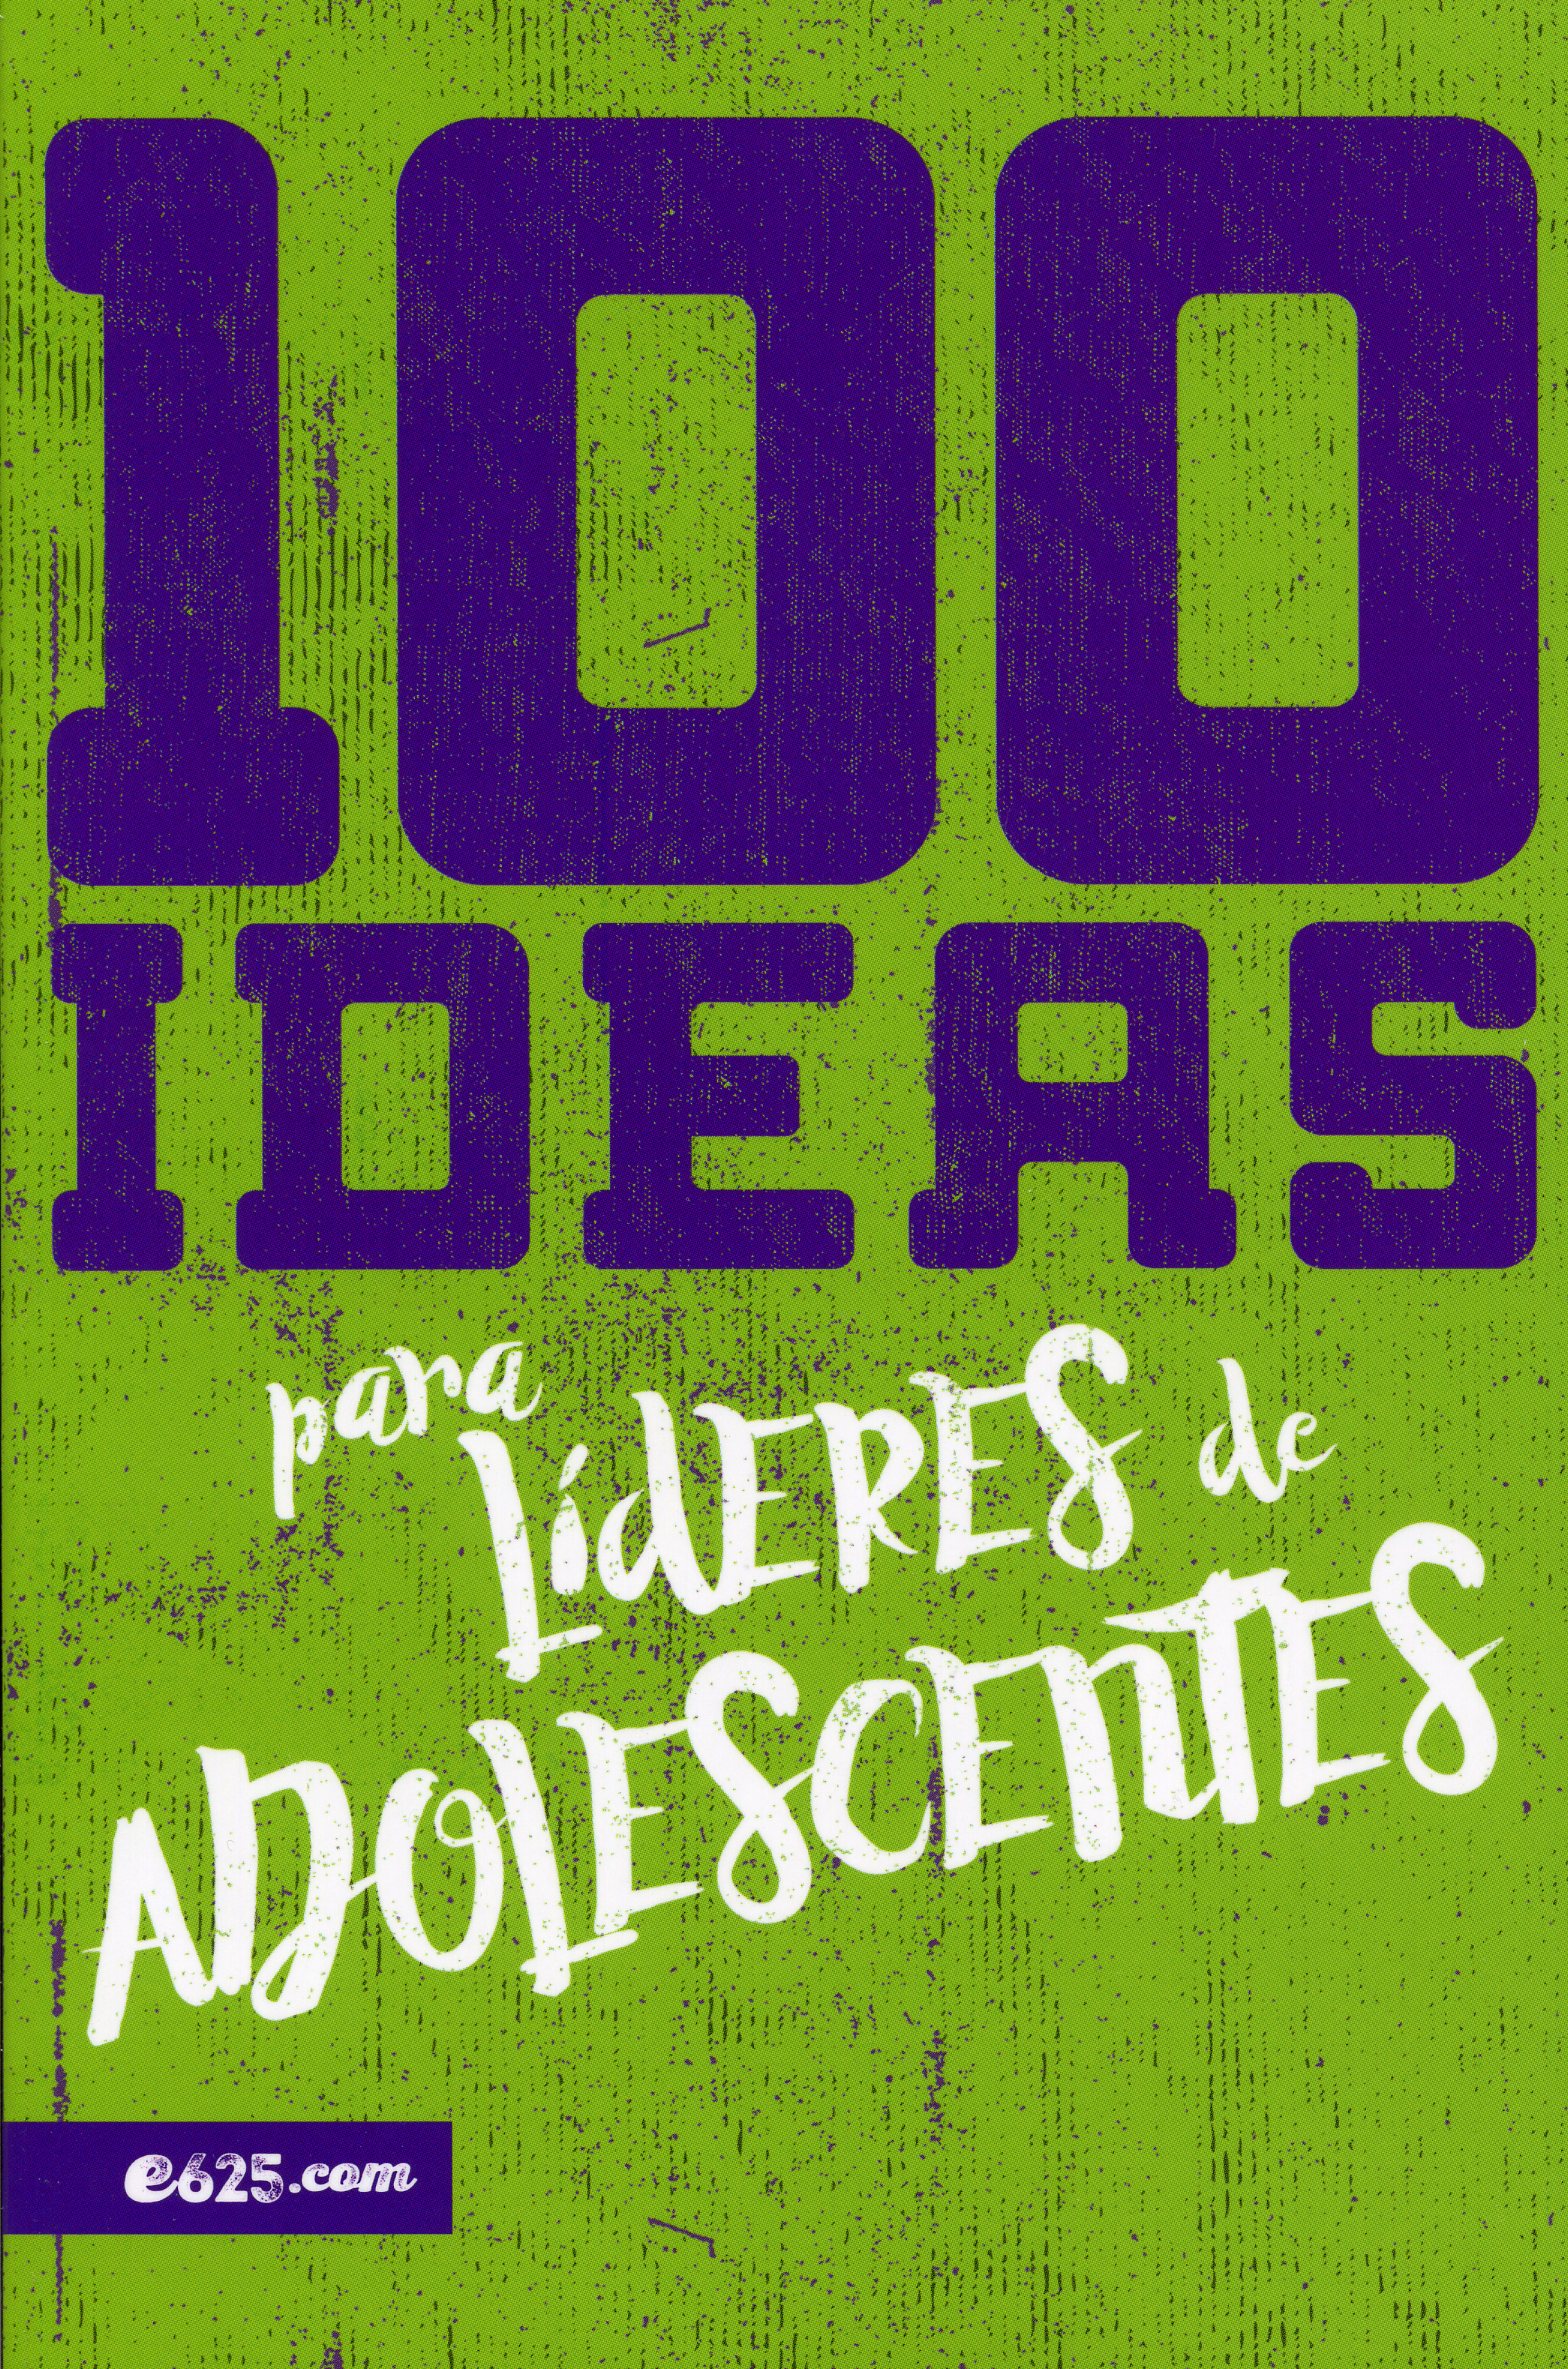 100 Ideas Para Lideres De Adolescentes